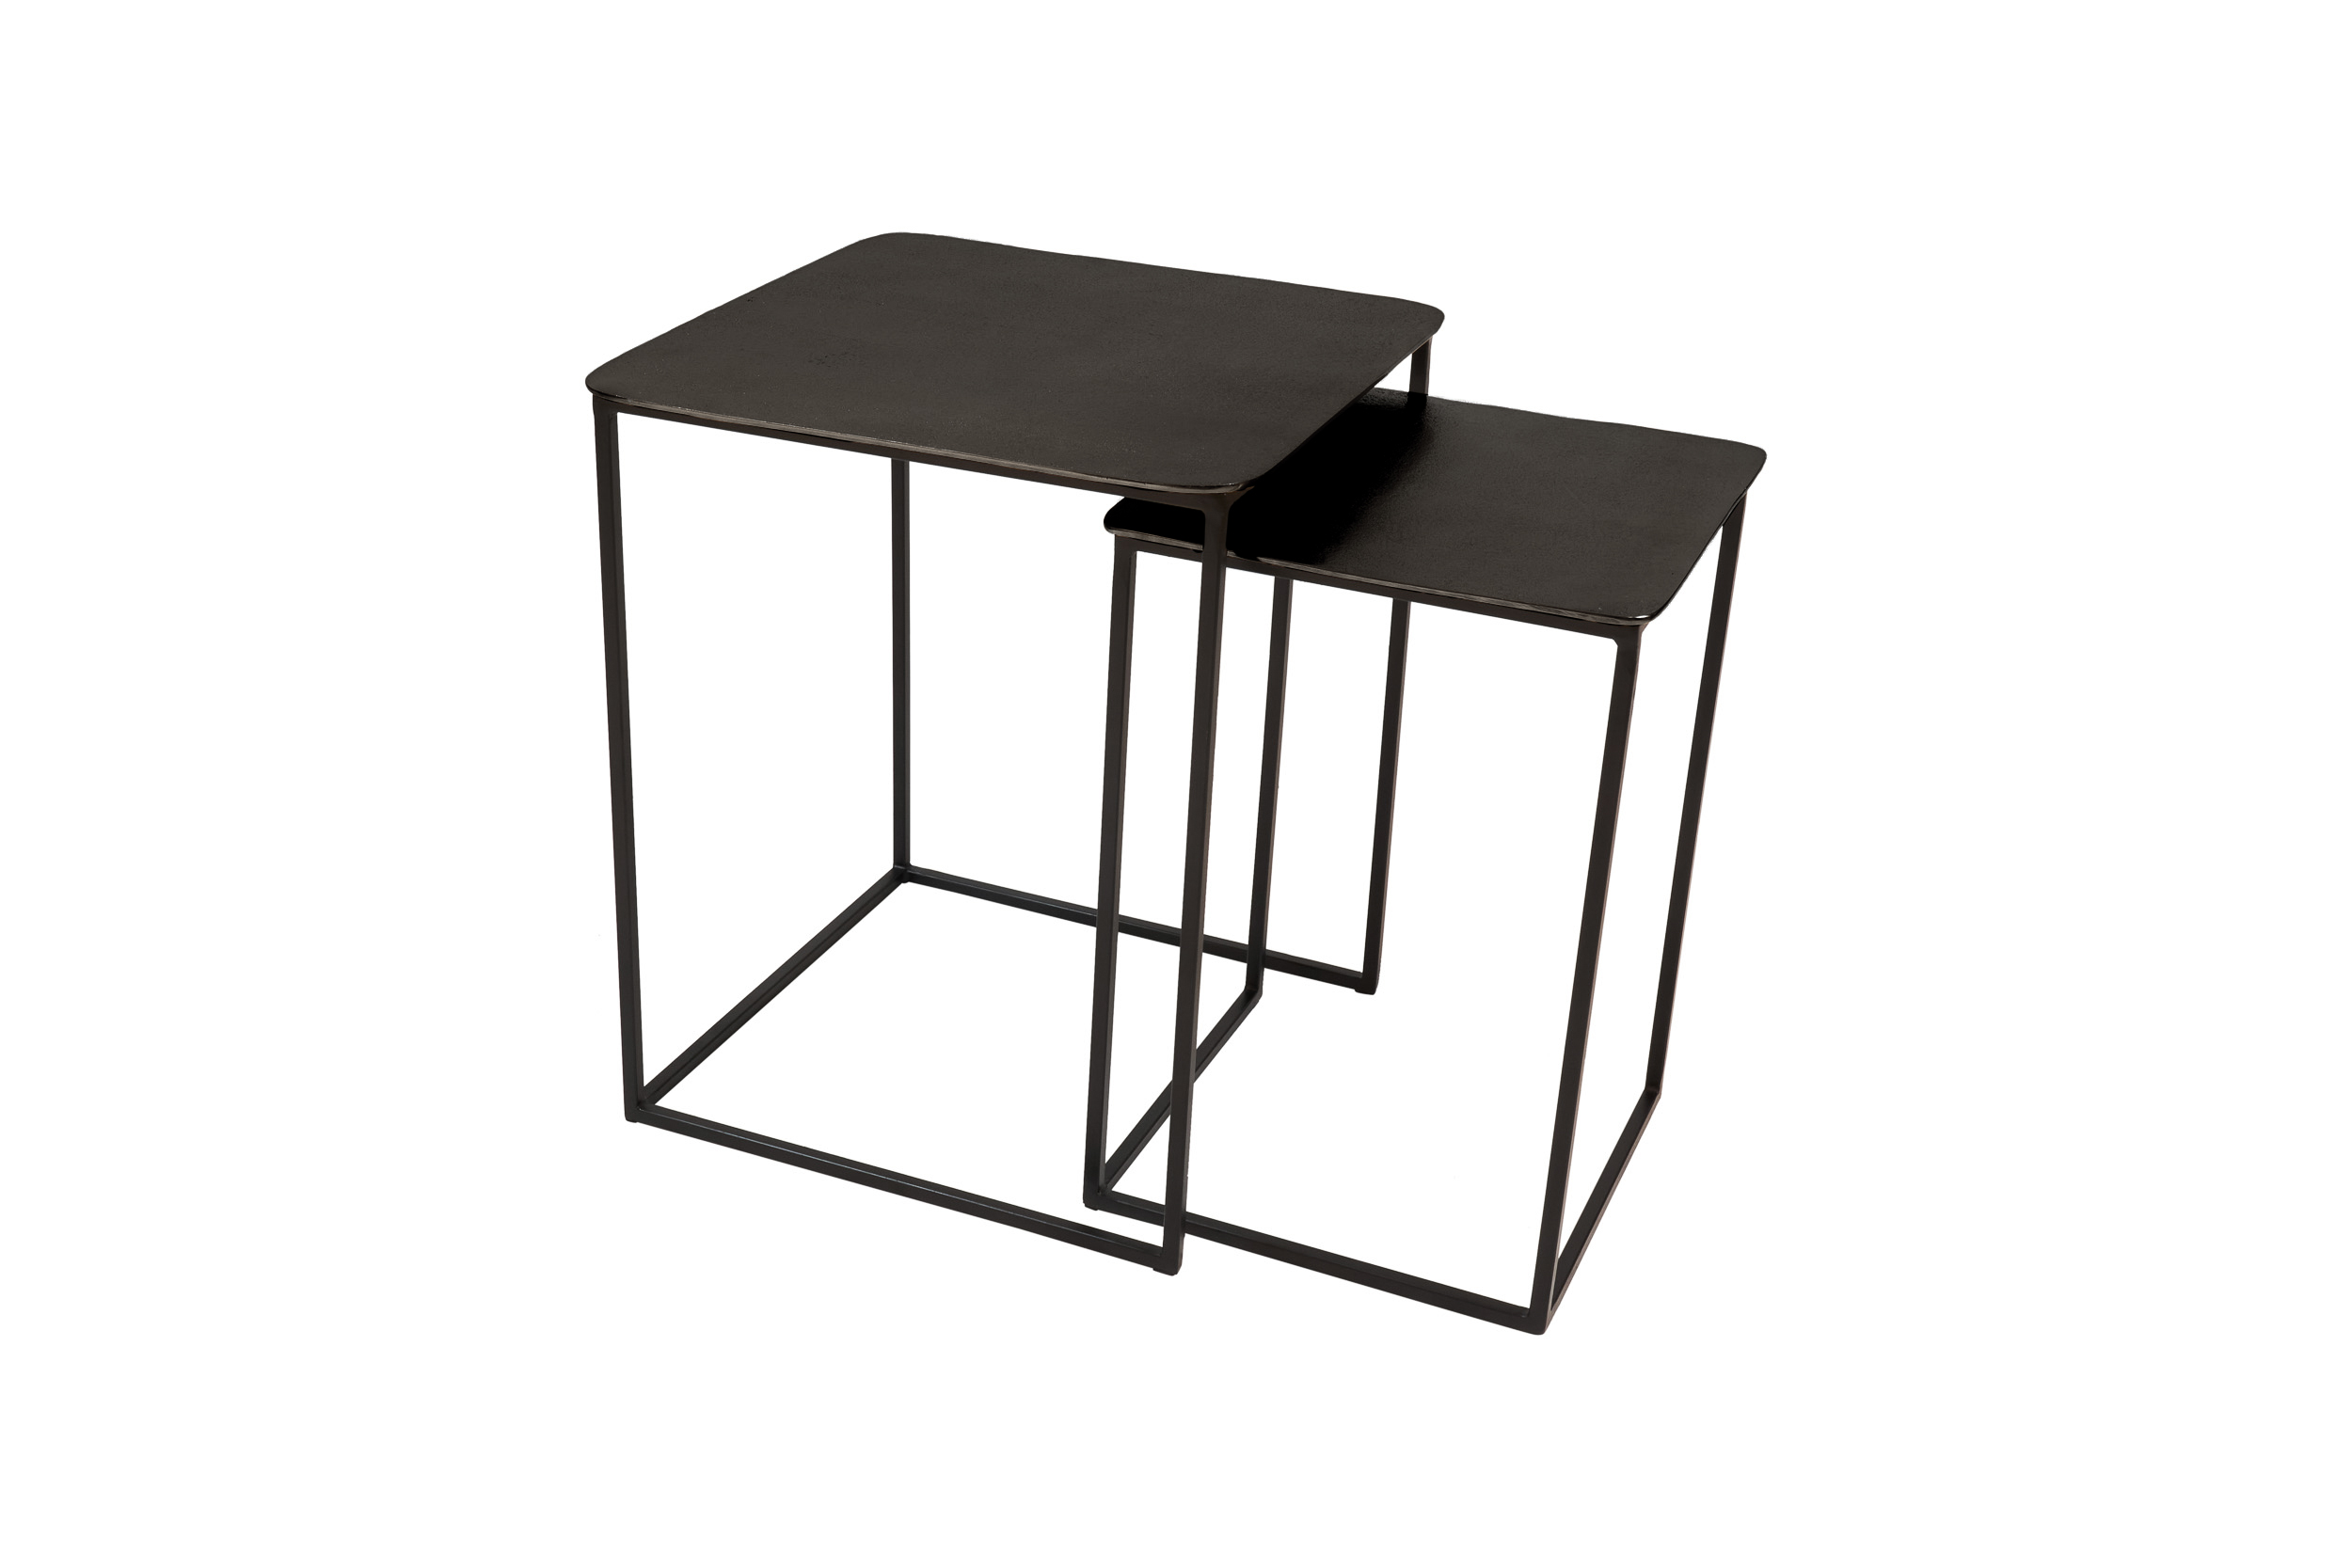 Tisch Set 2 Top Alu schwarz Gestell Metall schwarz  47x47x50cm 35x35x50cm